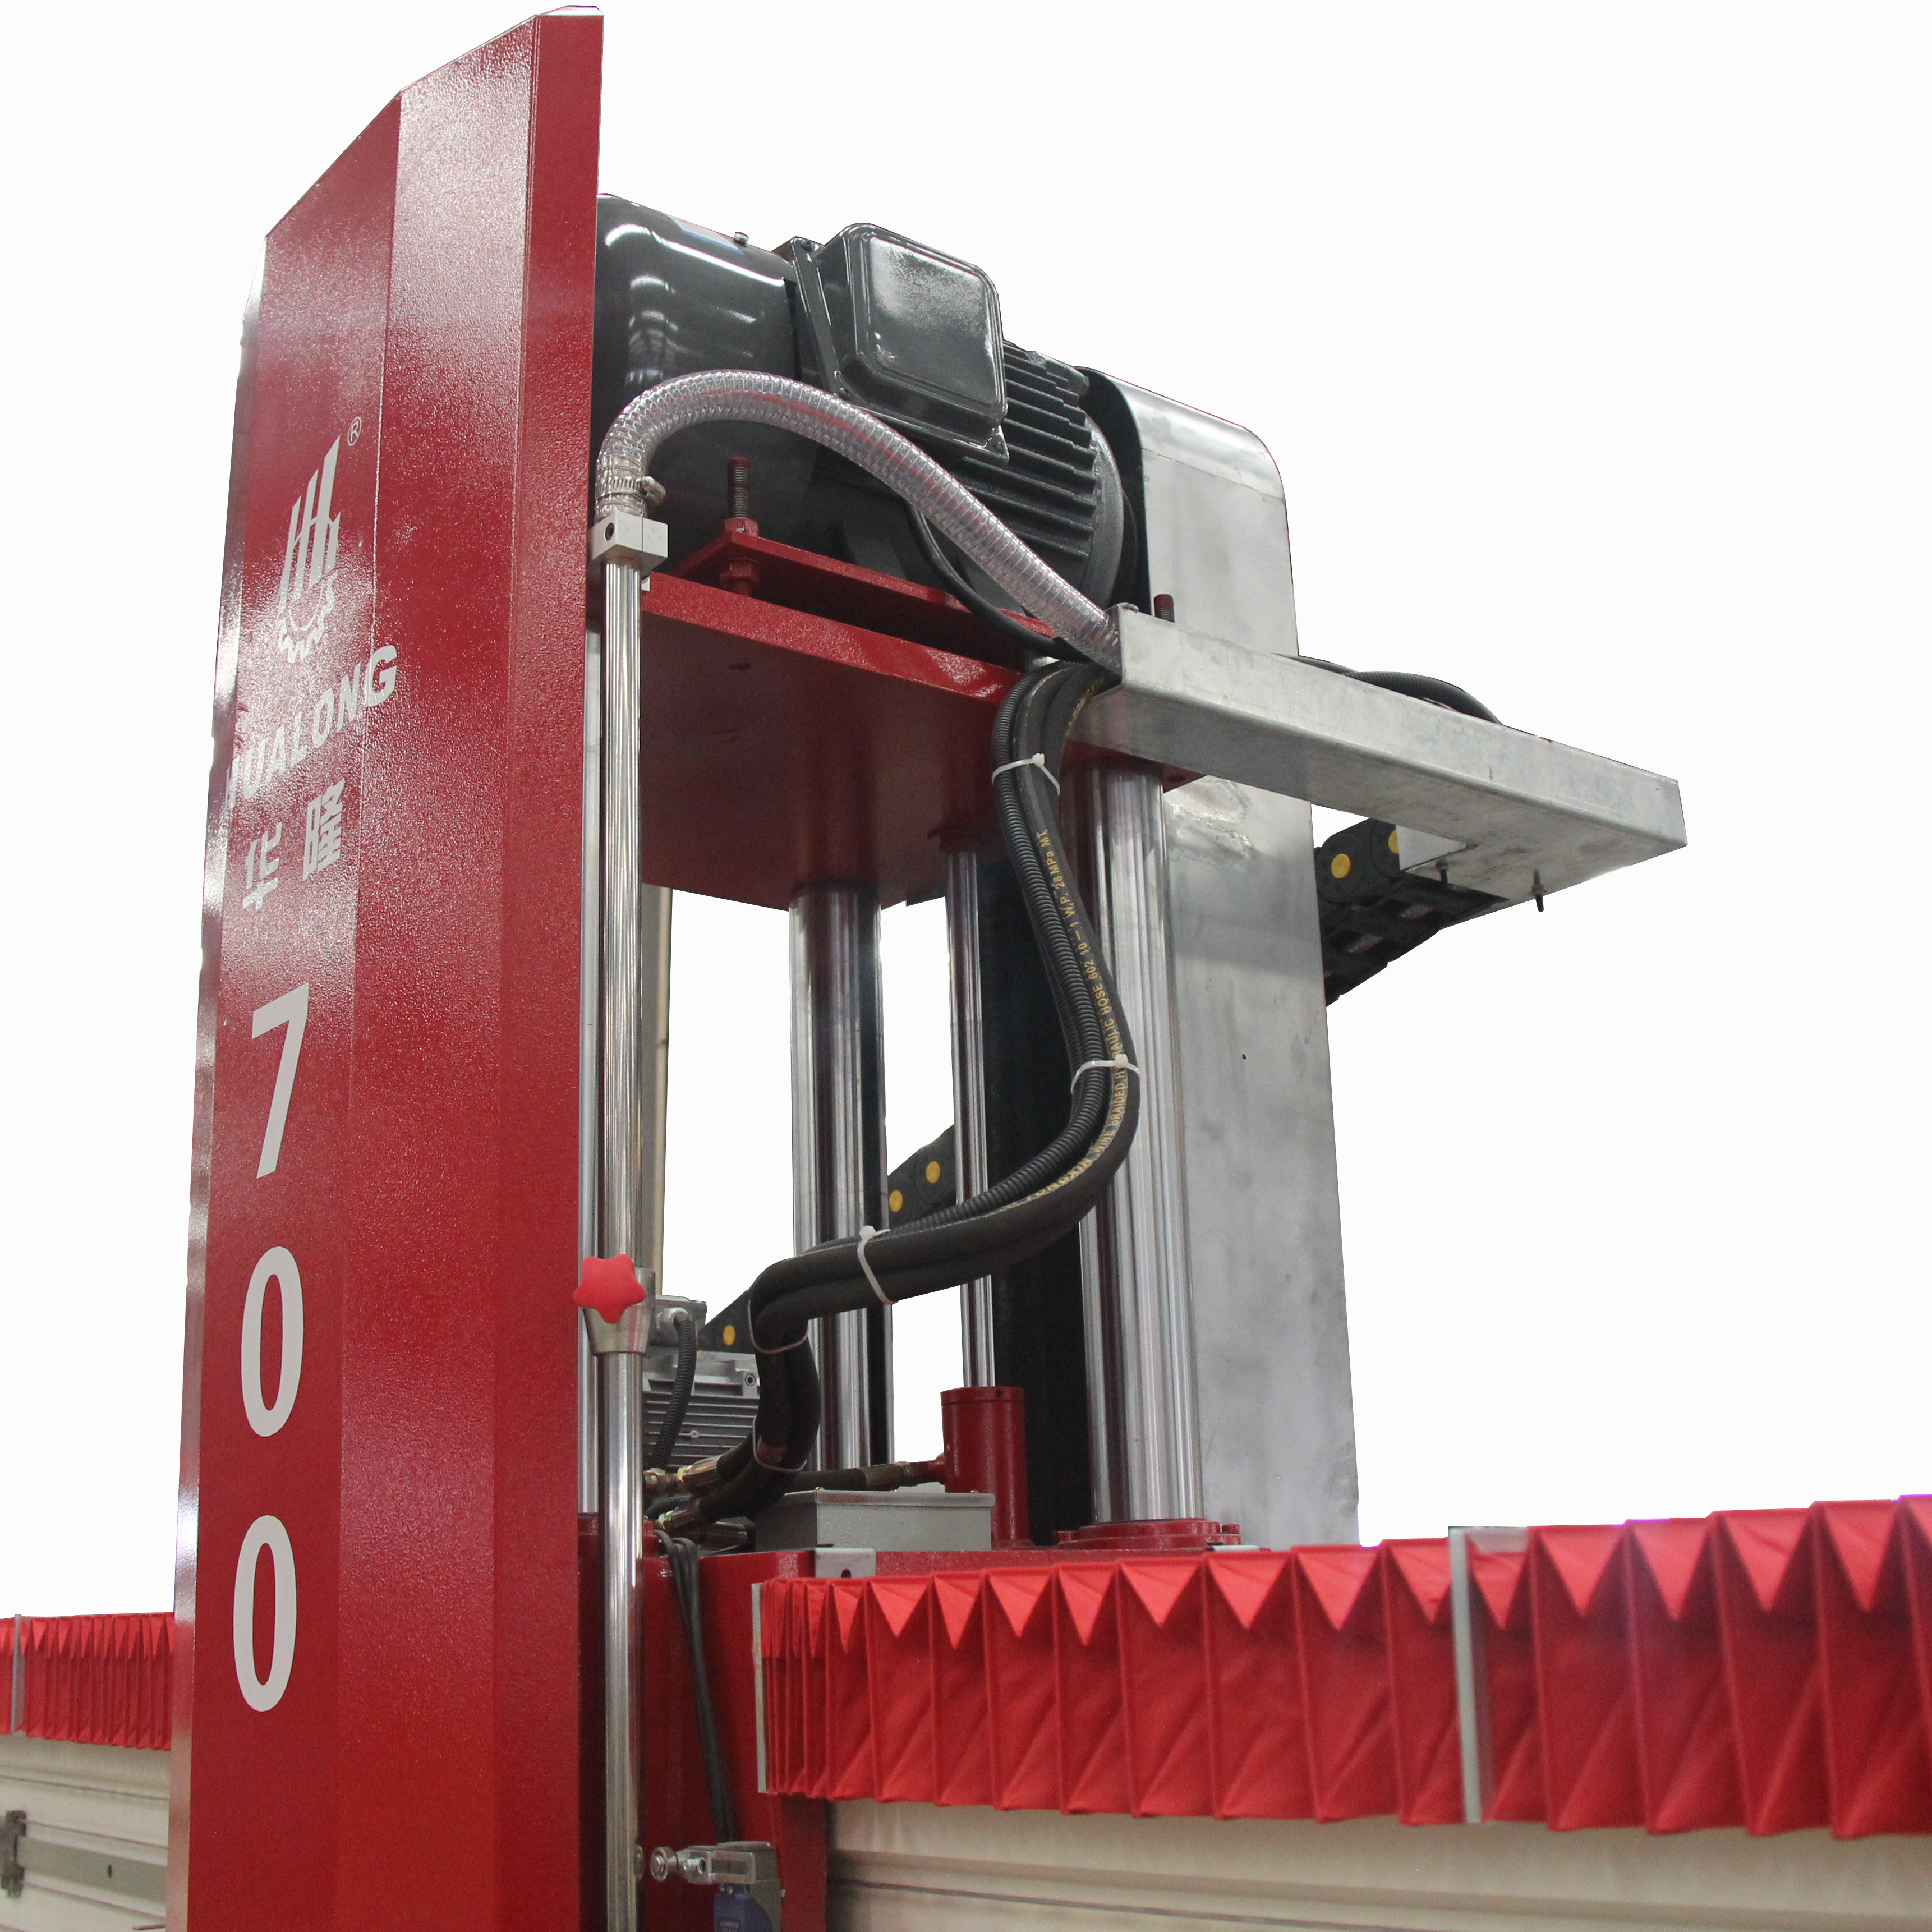 HUALONG HLSQ-700 machine de découpe de scie à pierre infrarouge automatique pour coupeur de marbre prix pas cher